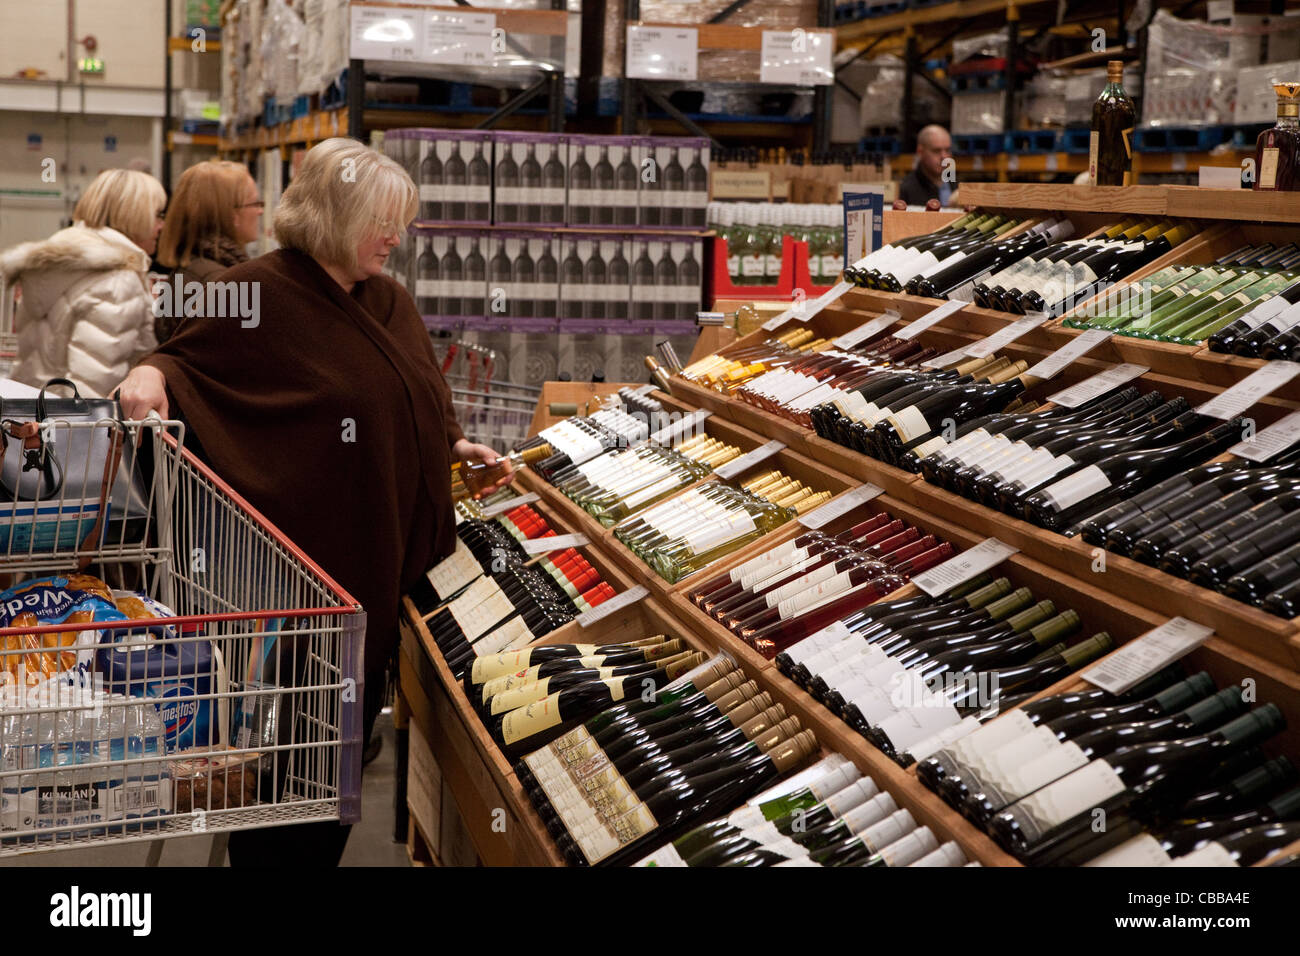 Frauen kaufen Wein in einem Costco Rabatt Lager speichern, am See, UK Stockfoto